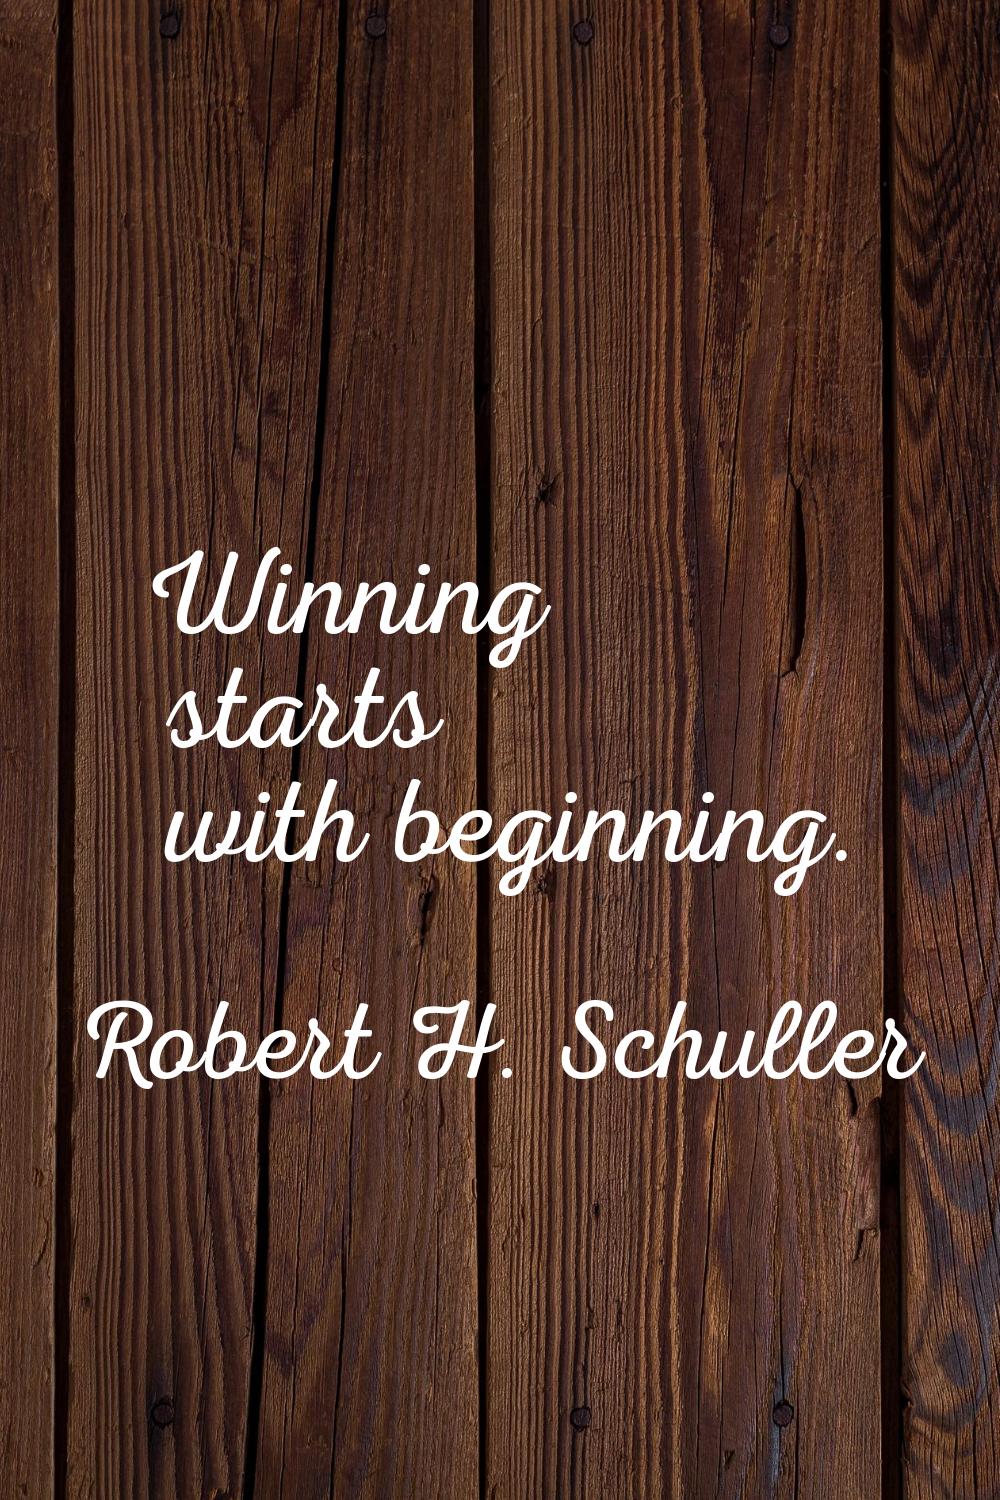 Winning starts with beginning.